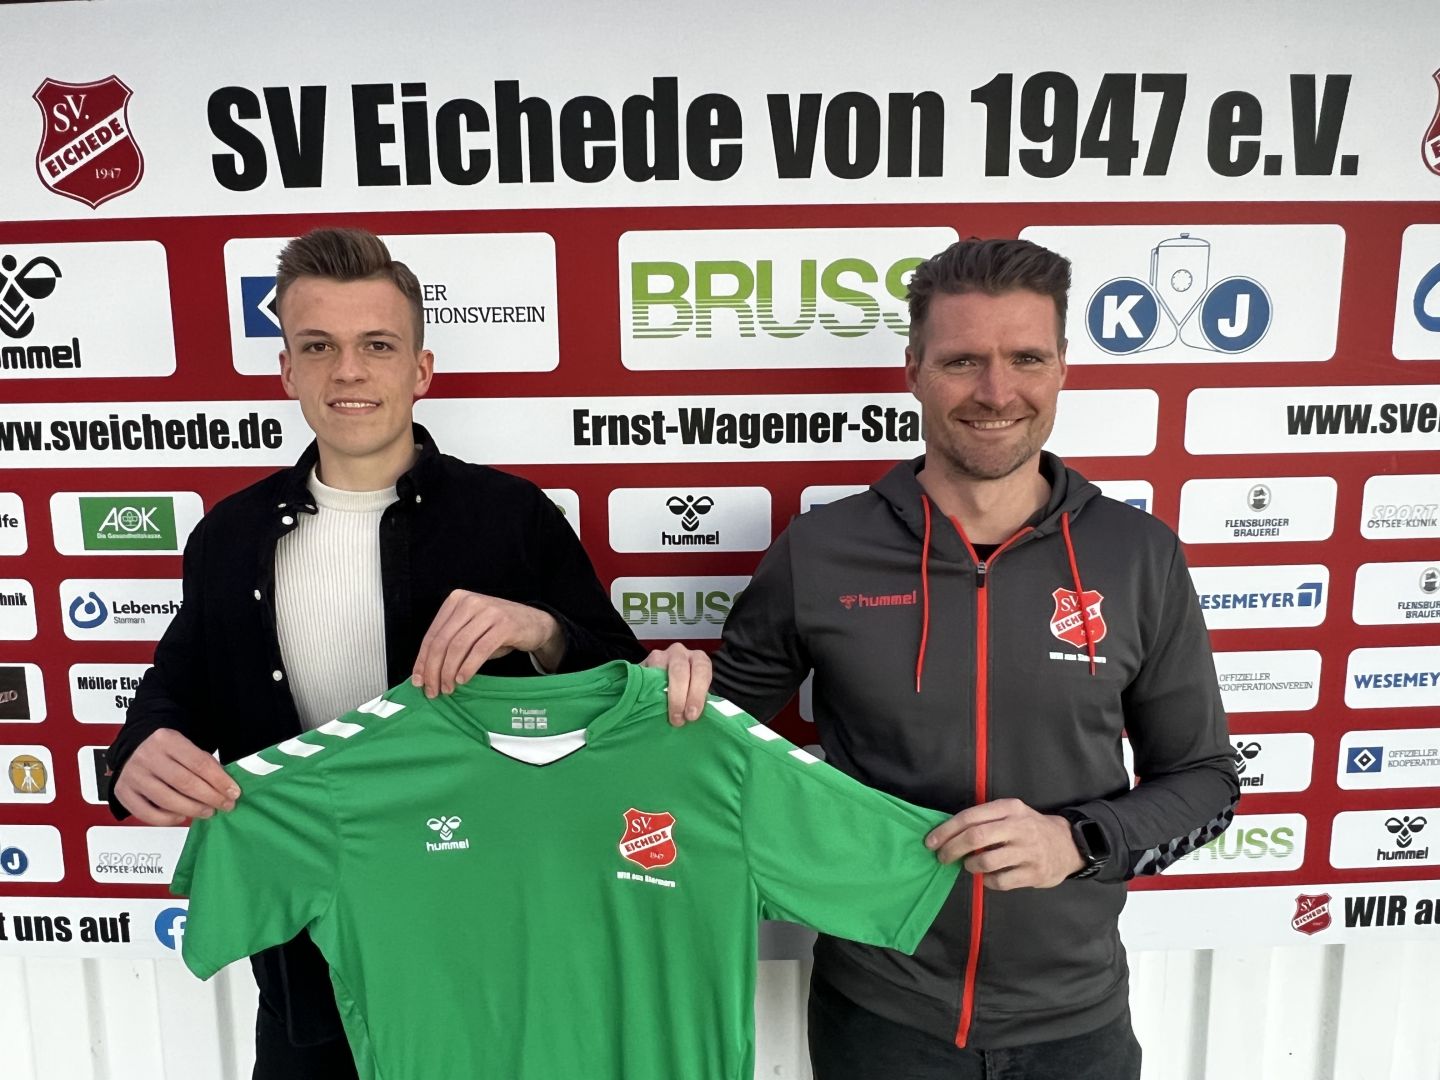 Christopher Barkmann wechselt zum SV Eichede